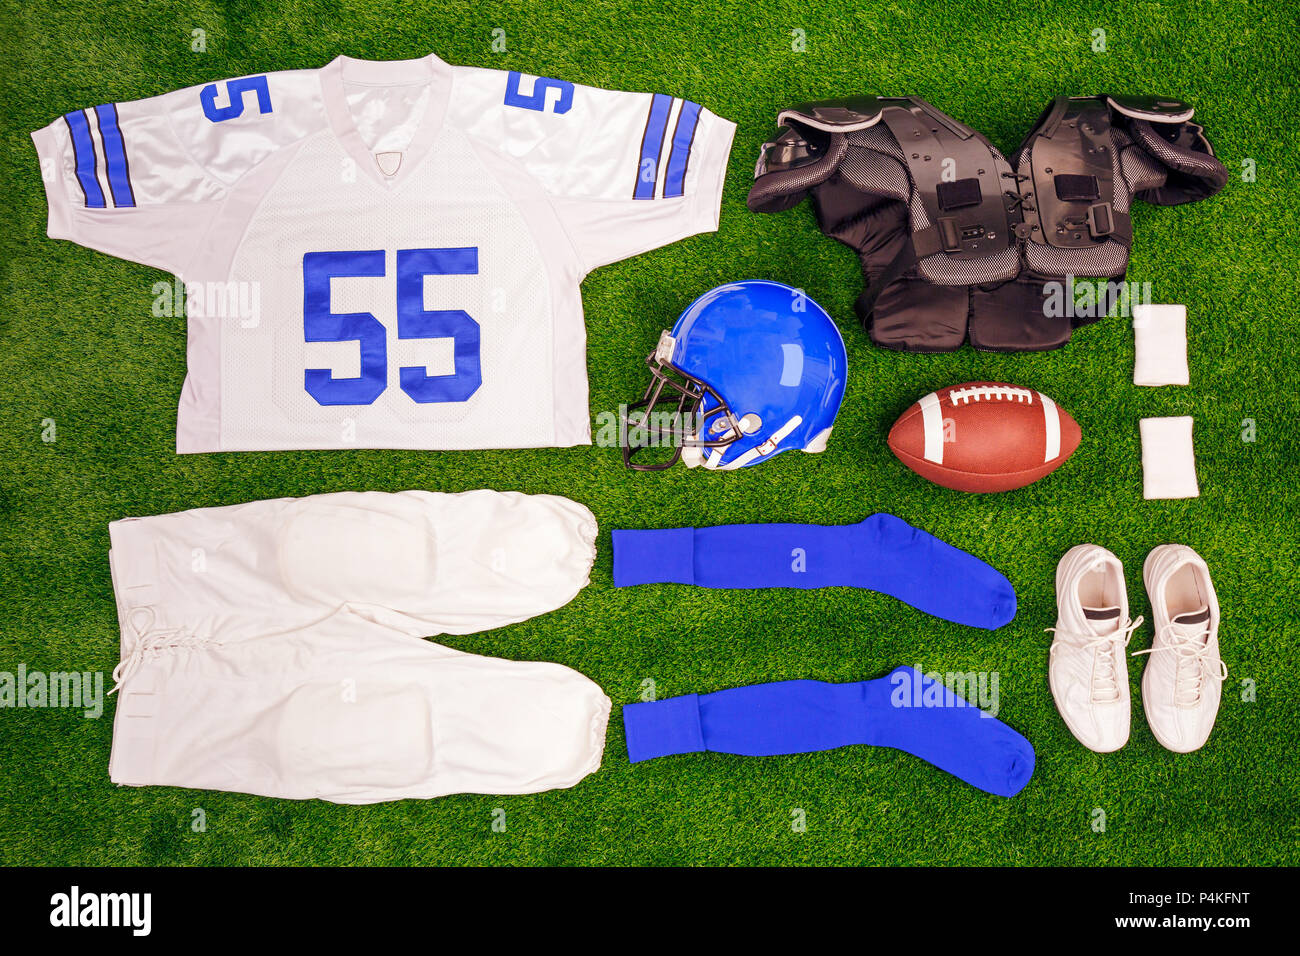 Une mise à plat d'un arrangement avec kit de football entre 40 ball, shirt, un casque et des patins de protection. Banque D'Images